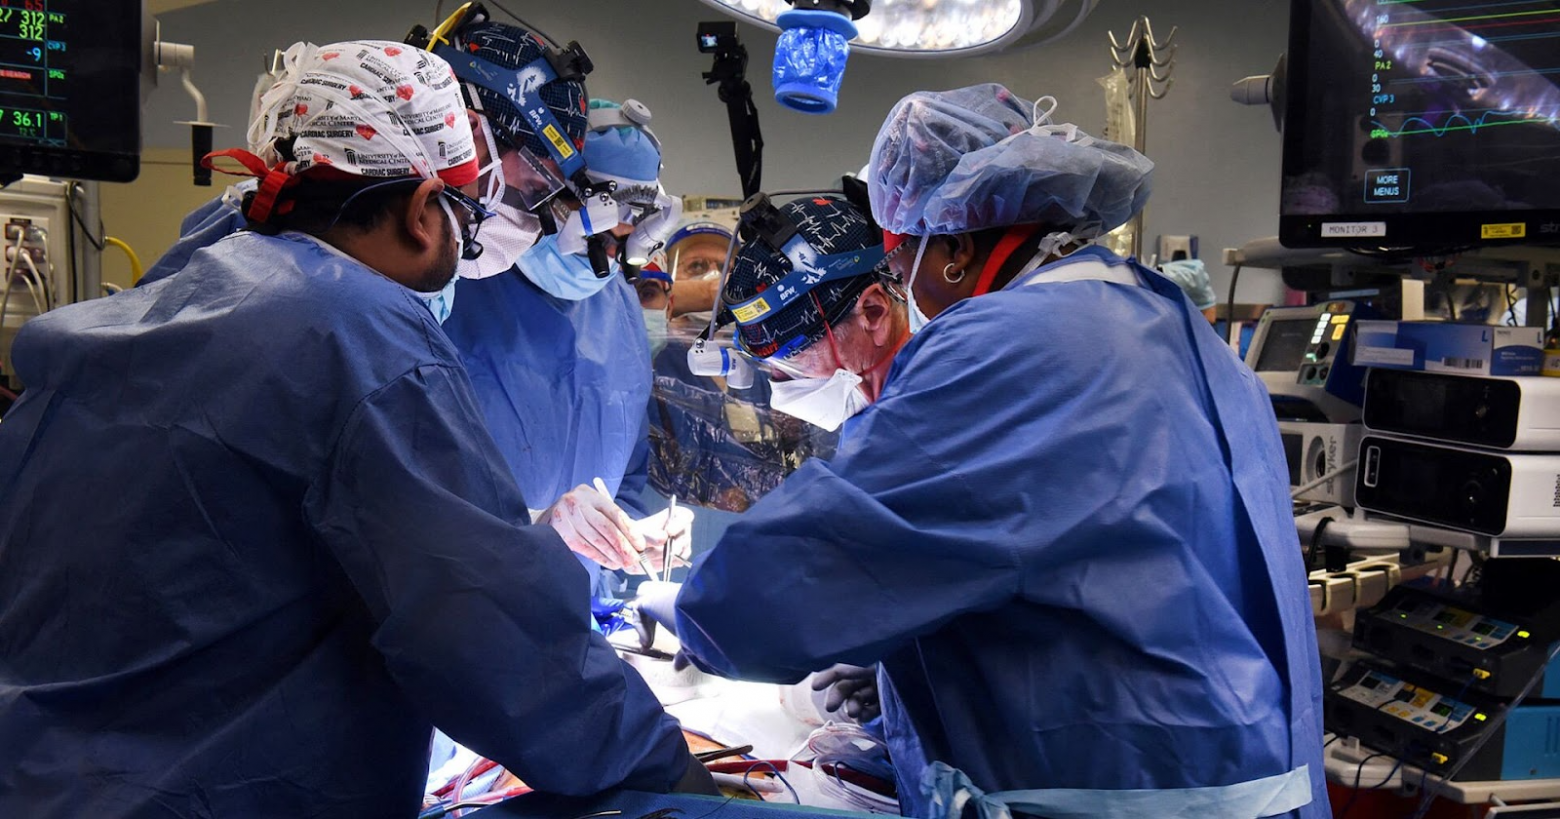 Хирурги из Университета Мэриленда провели операцию, чтобы узнать: может ли сердце генетически модифицированной свиньи поддерживать жизнь человекаИсточник: University of Maryland School of Medicine